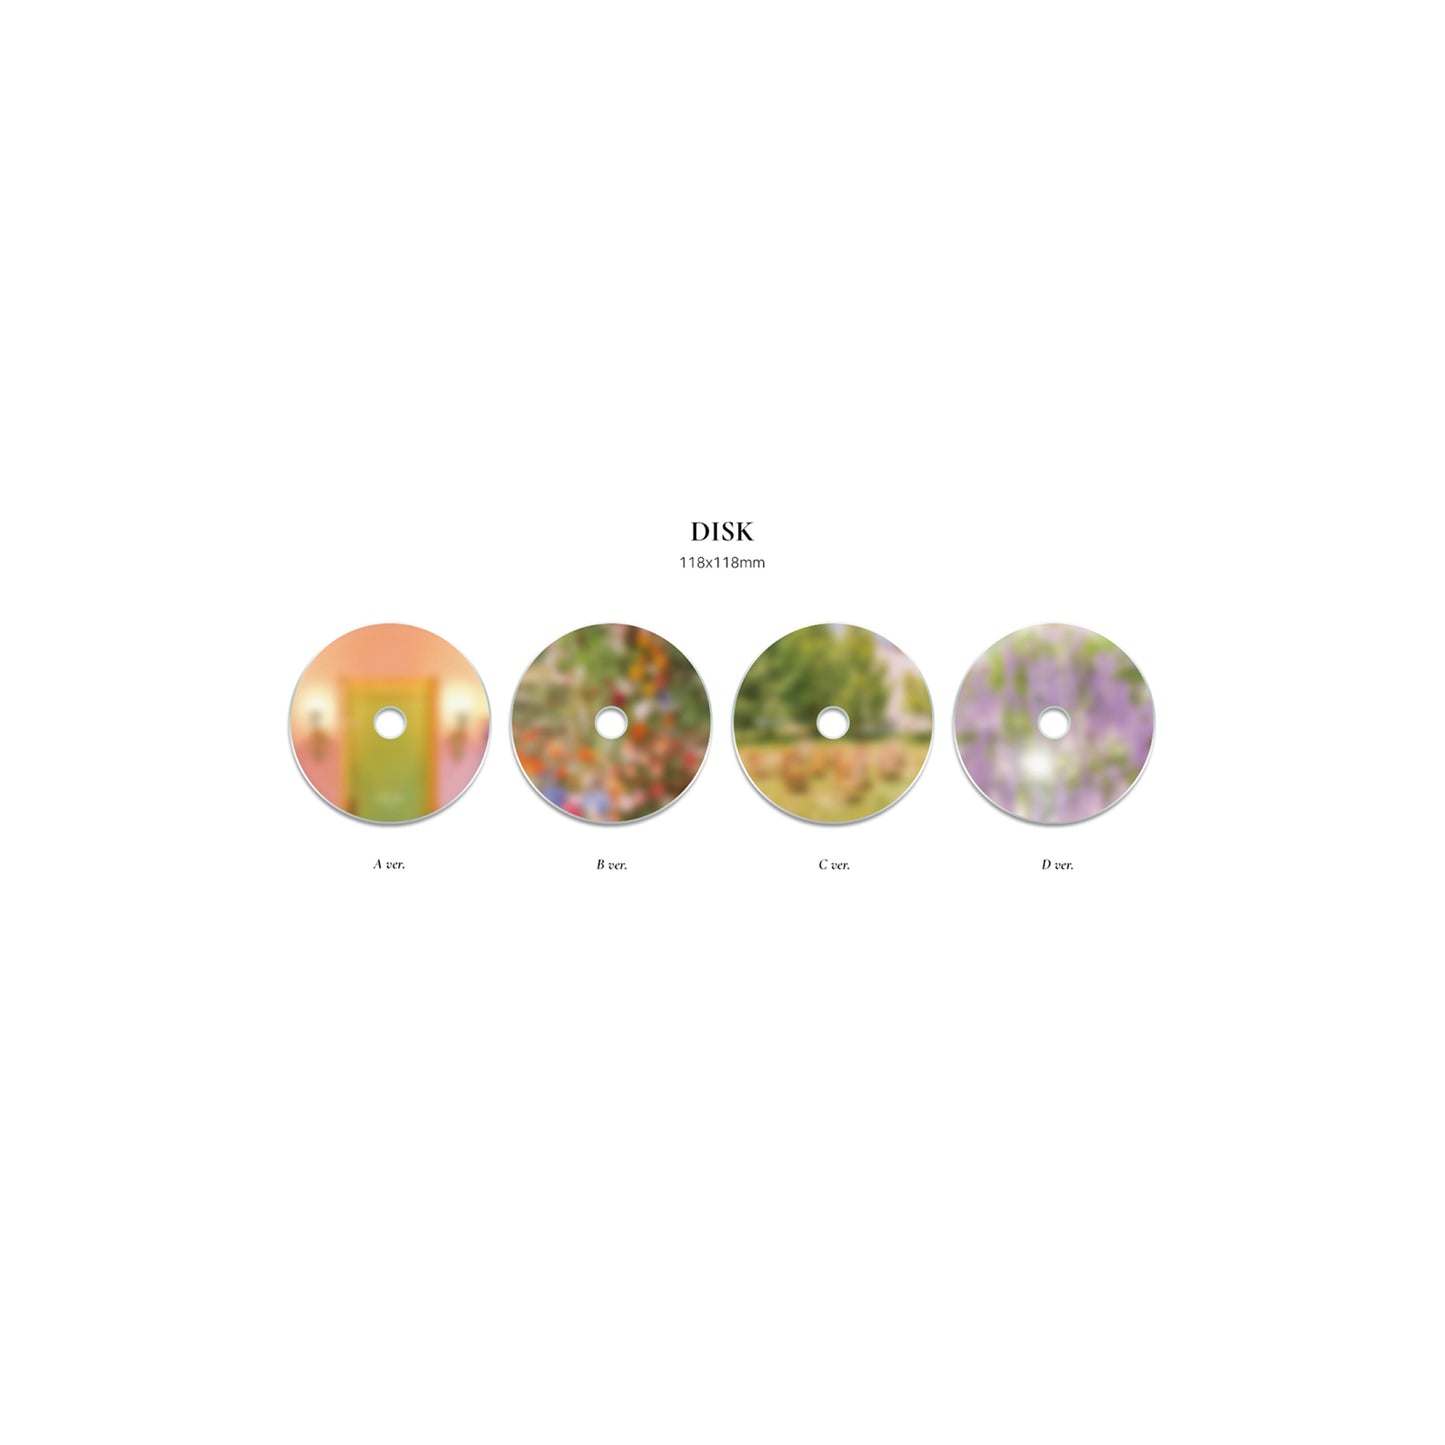 LOONA | Summer Special Mini Album | Flip that